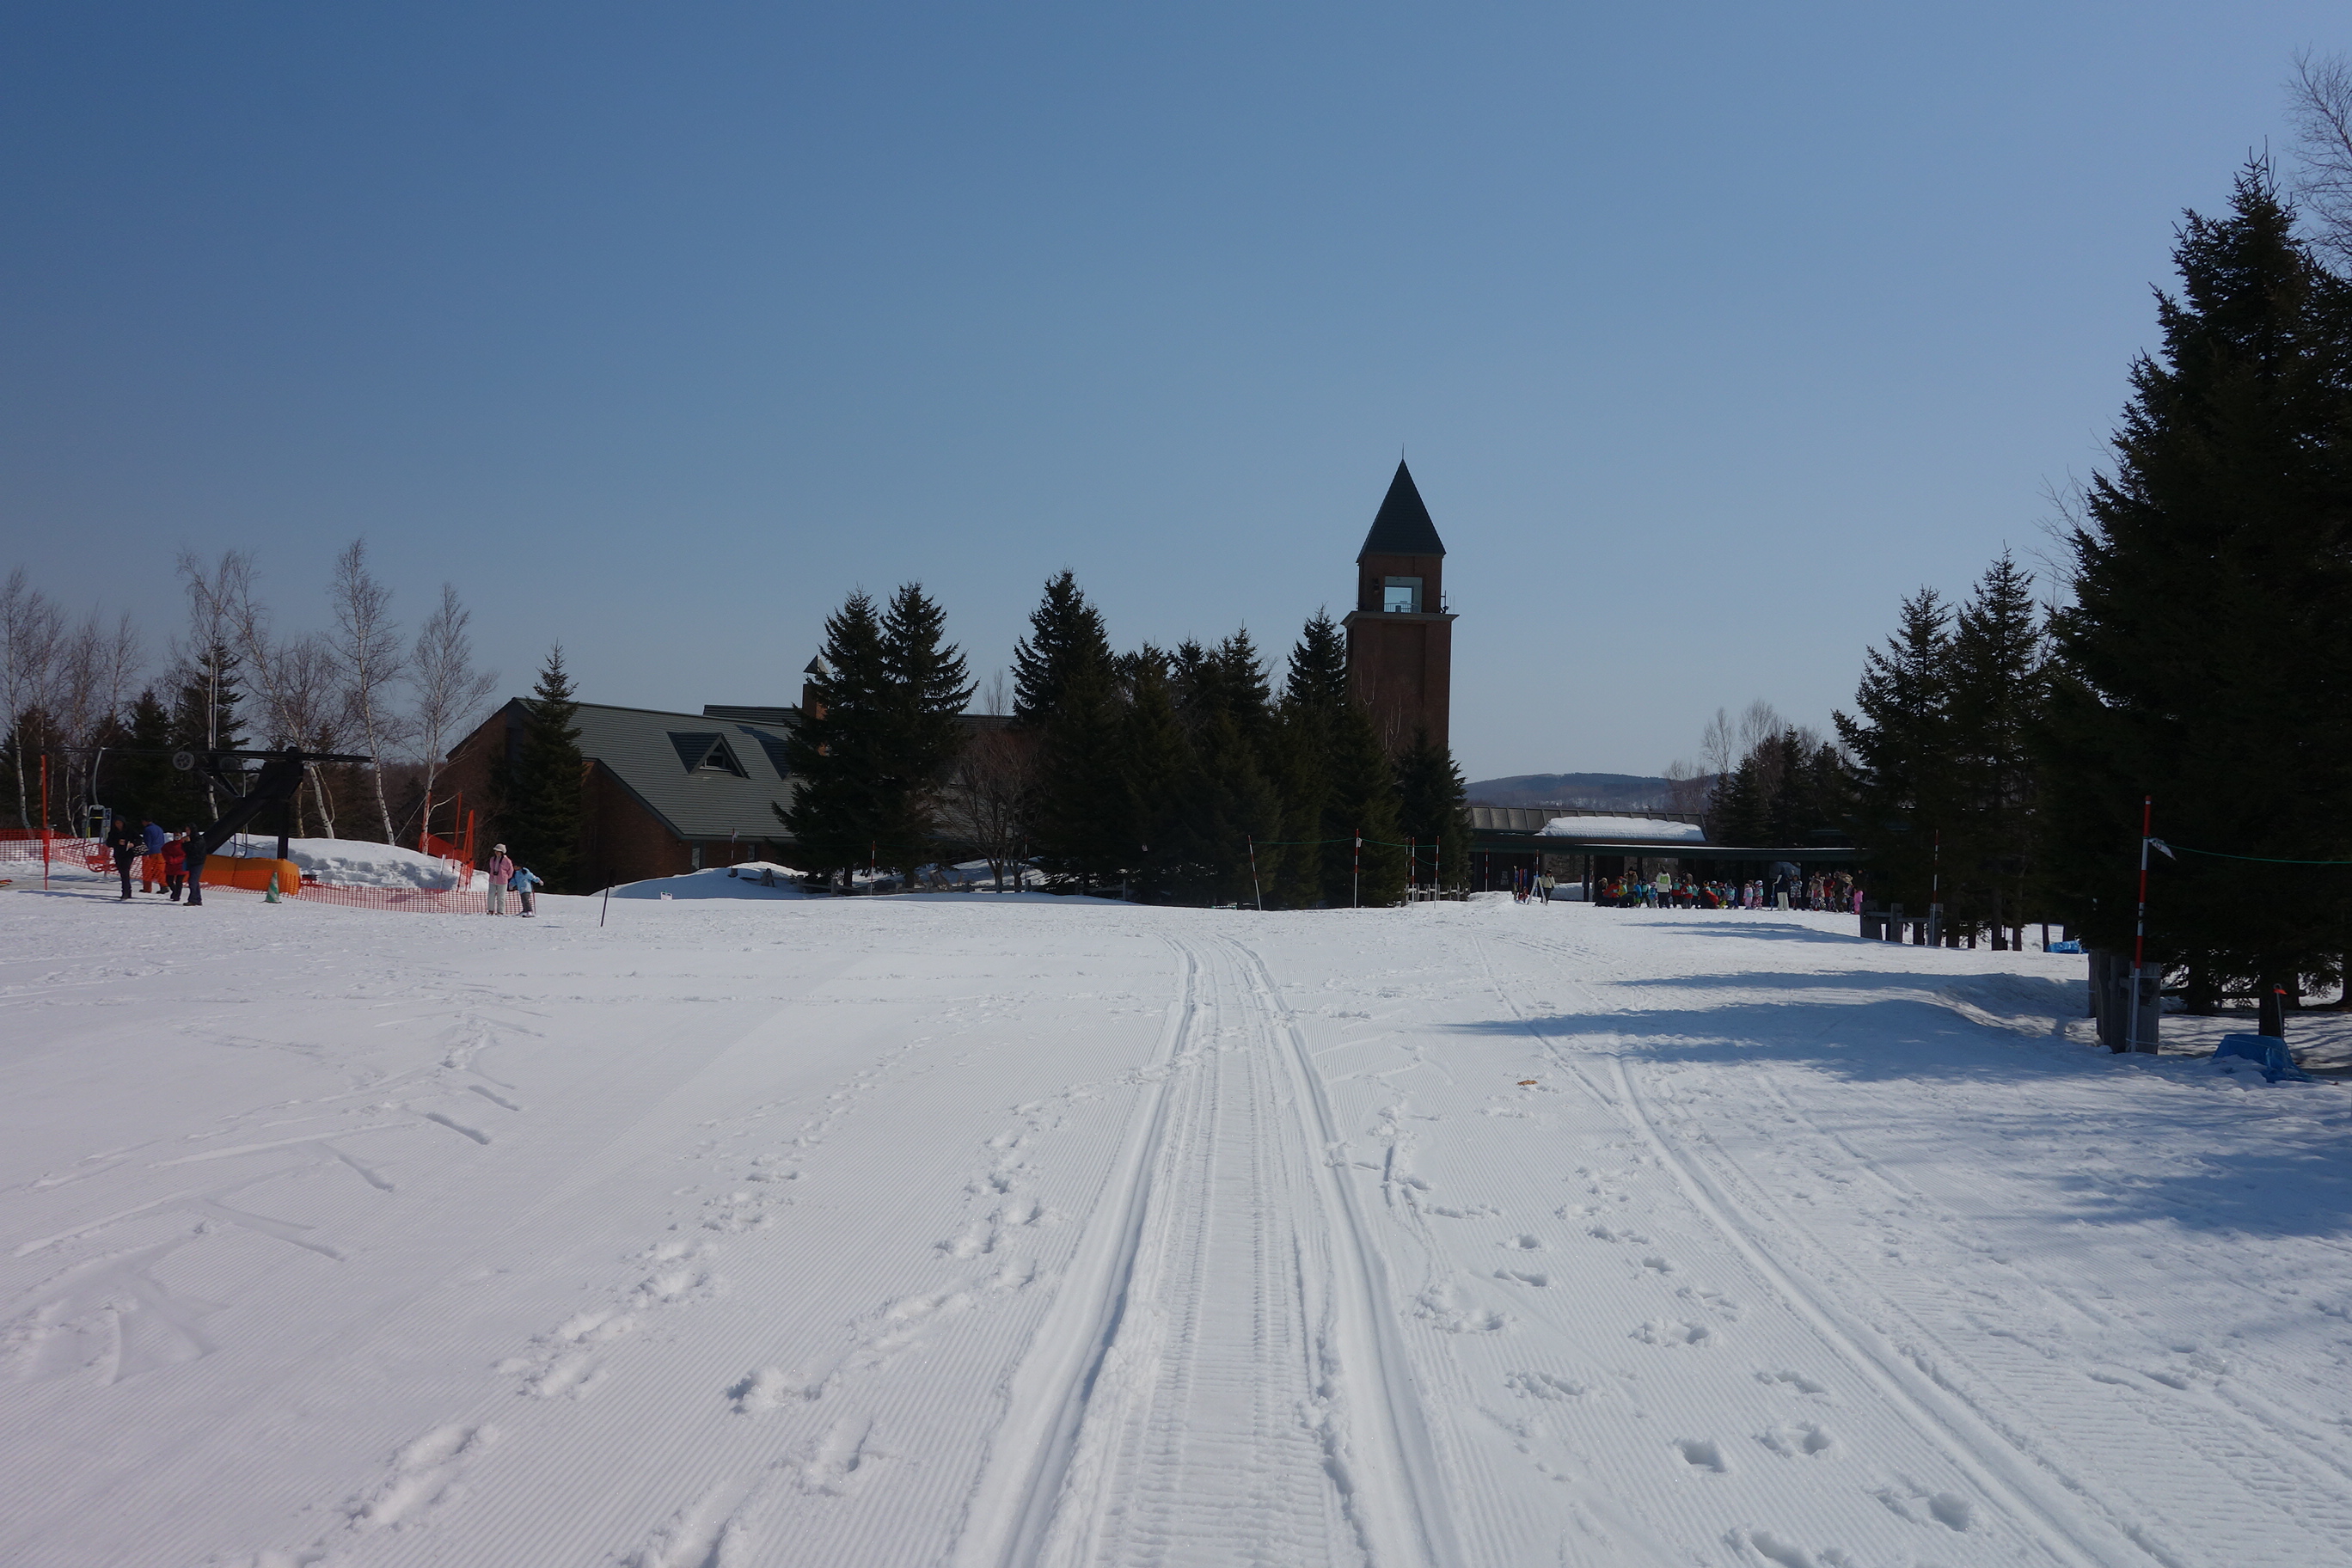 札幌免費玩雪 滑雪教學 滝野鈴蘭公園 北海道冬天親子好去處 Tripmoment 時刻旅行 時刻旅行 享受旅行時刻